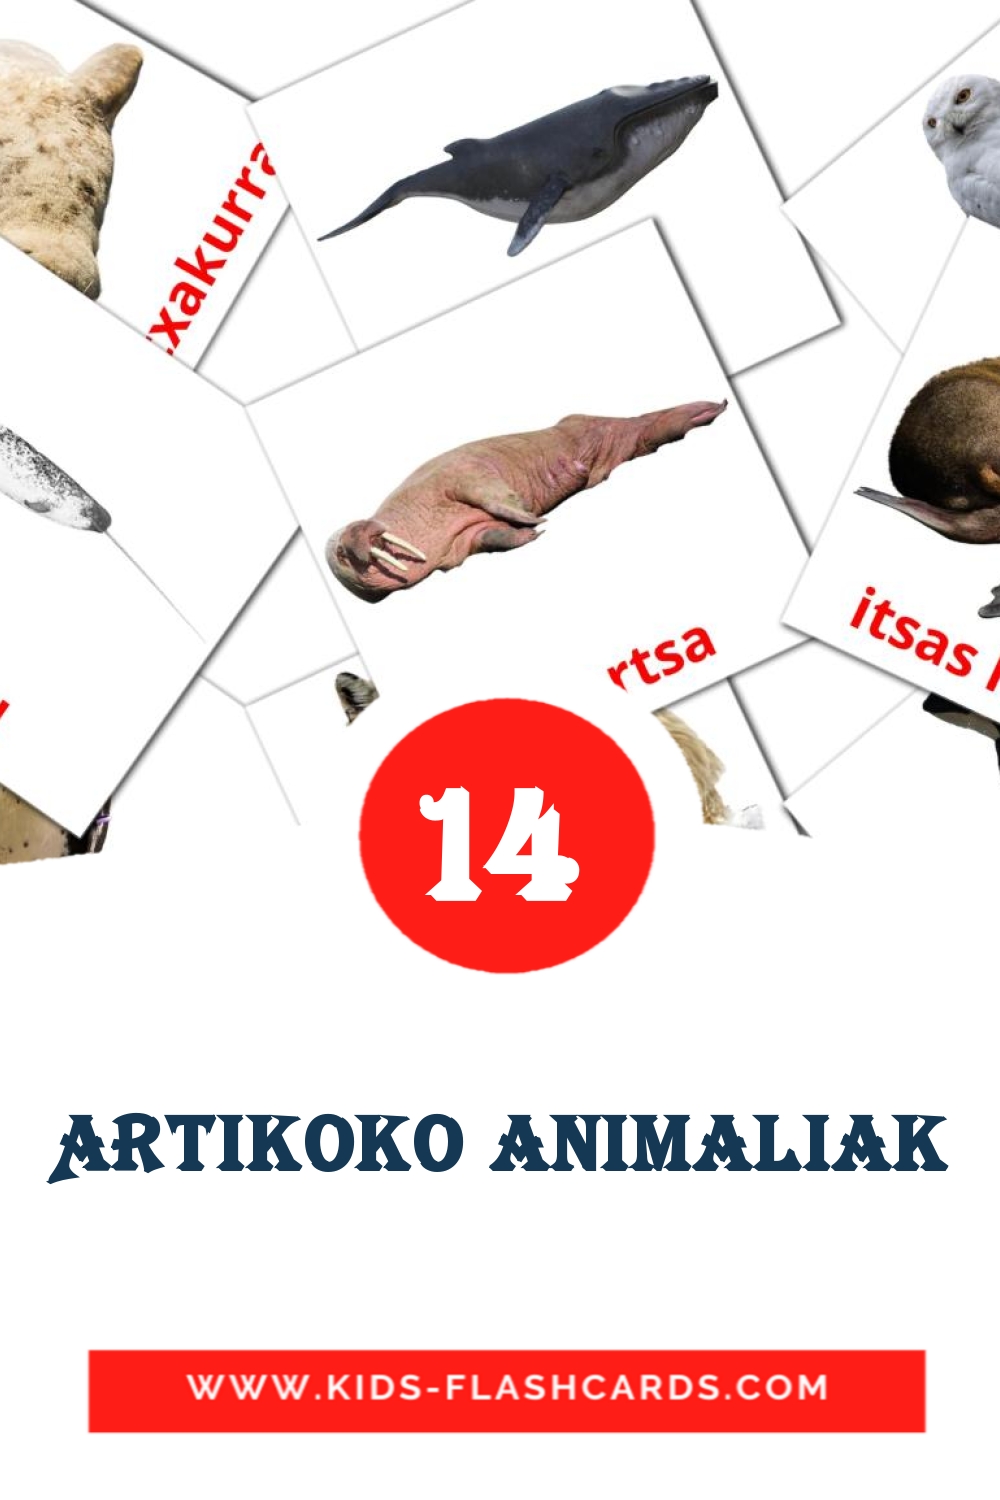 14 Artikoko animaliak Bildkarten für den Kindergarten auf Baskische